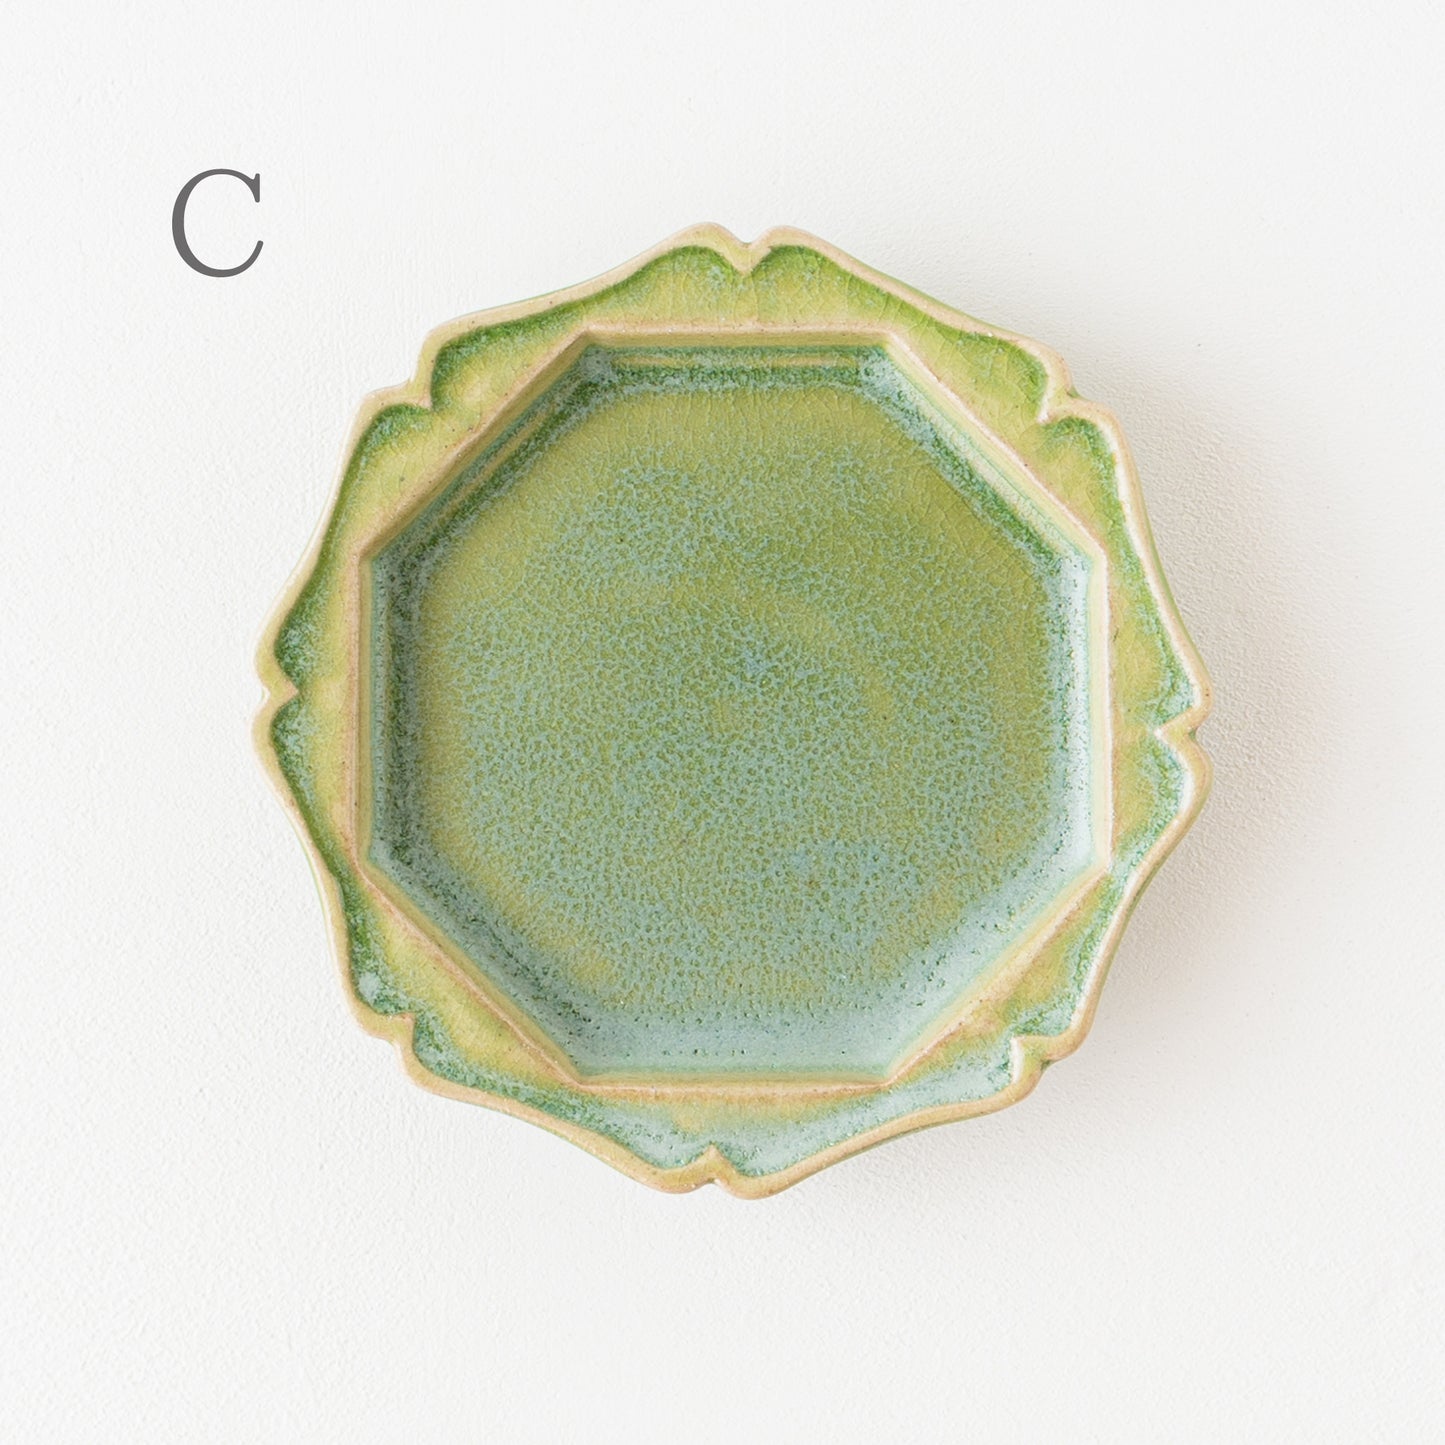 個性豊かな山葵釉が素敵な渡辺信史さんのねじり八角皿